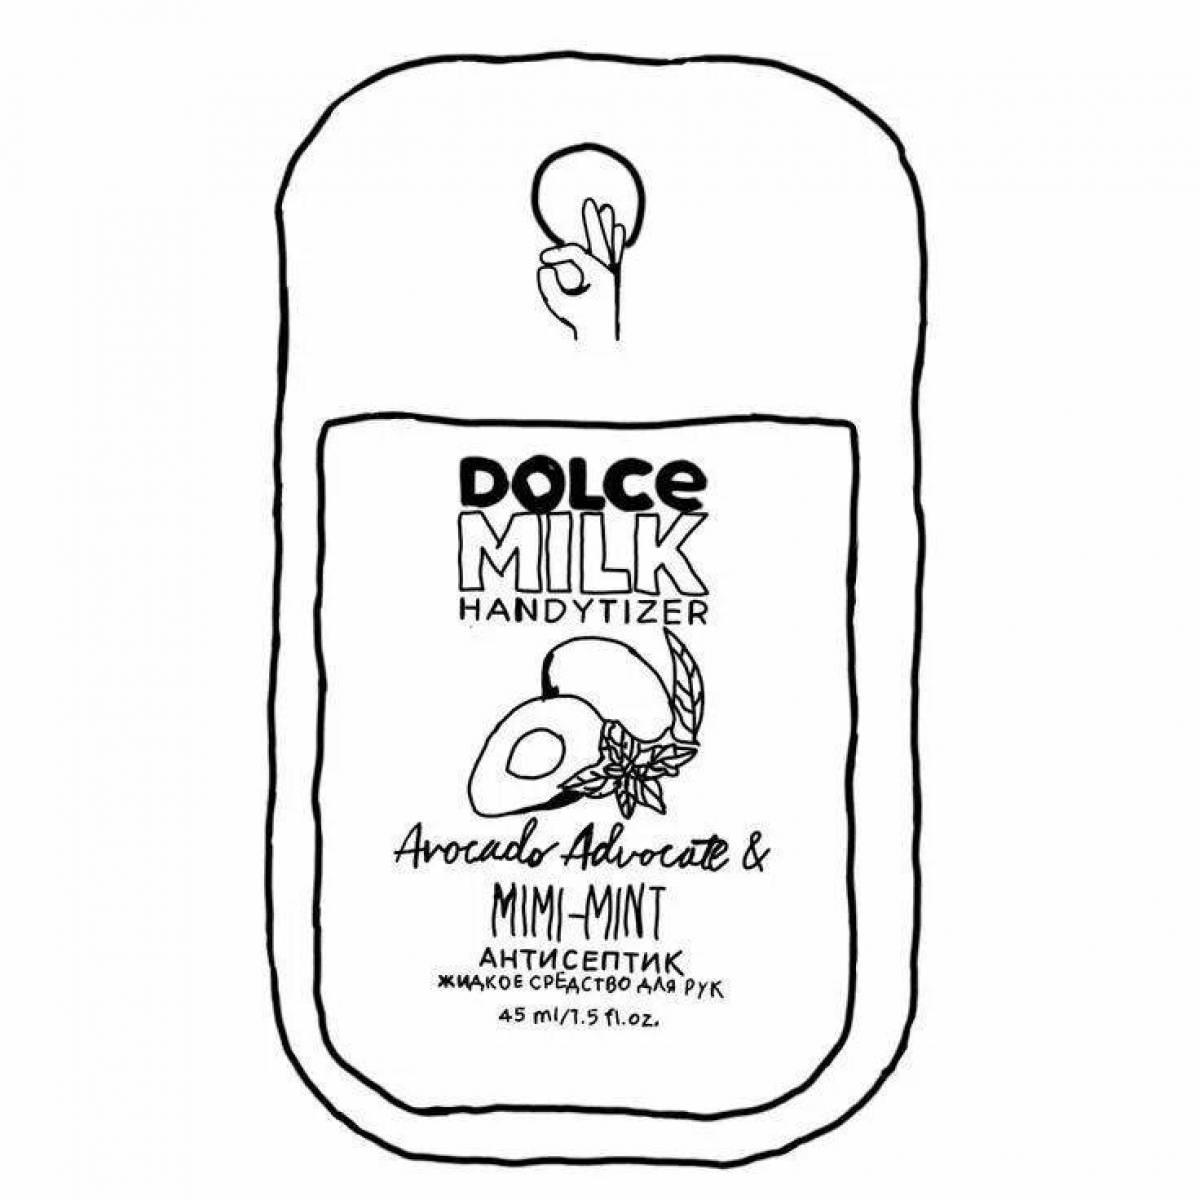 Очаровательная страница раскраски бумаги dolce milk